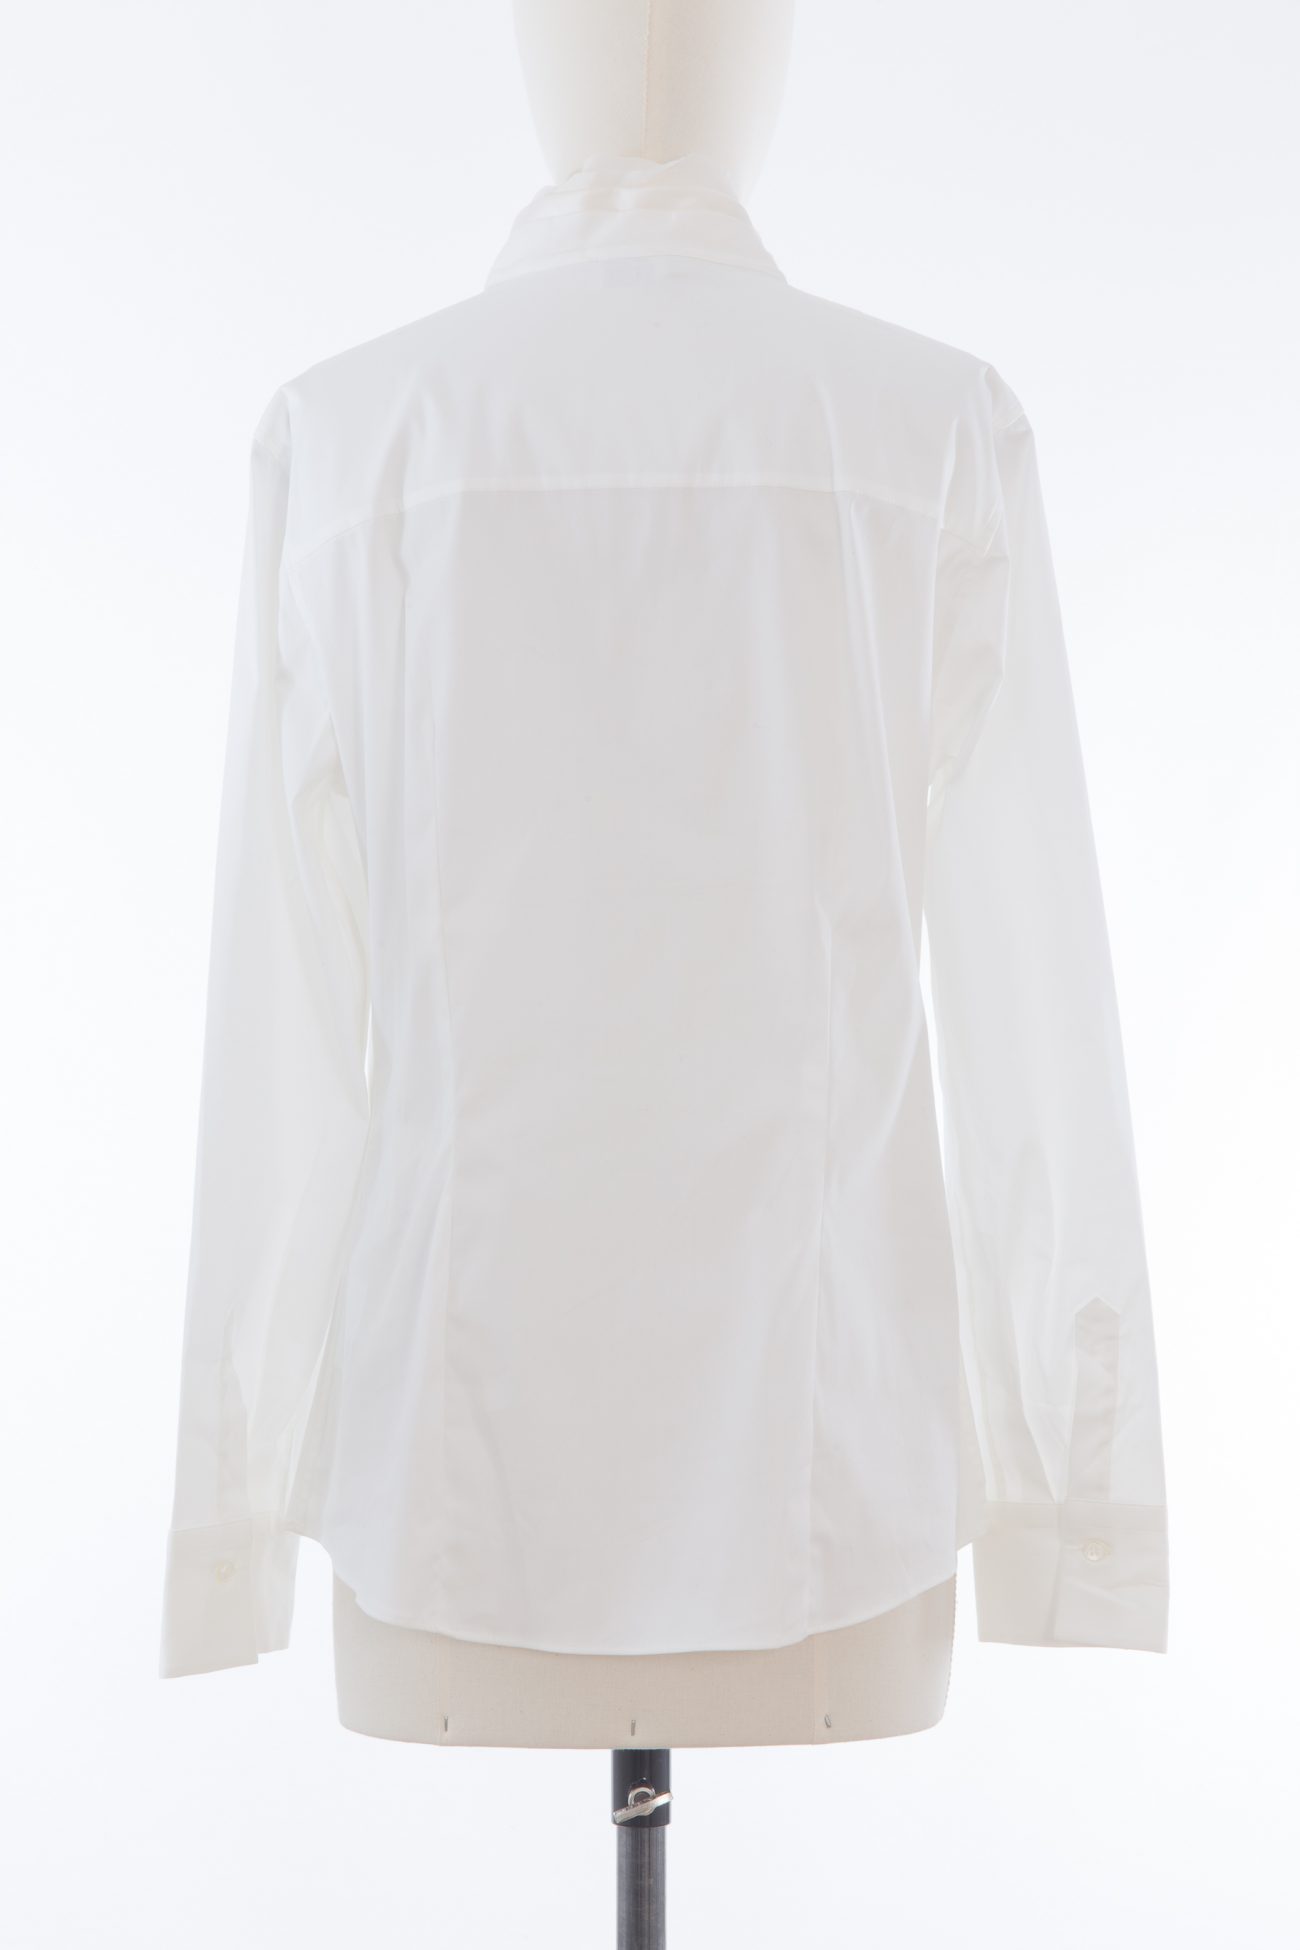 Brunello Cucinelli stretch cotton shirt